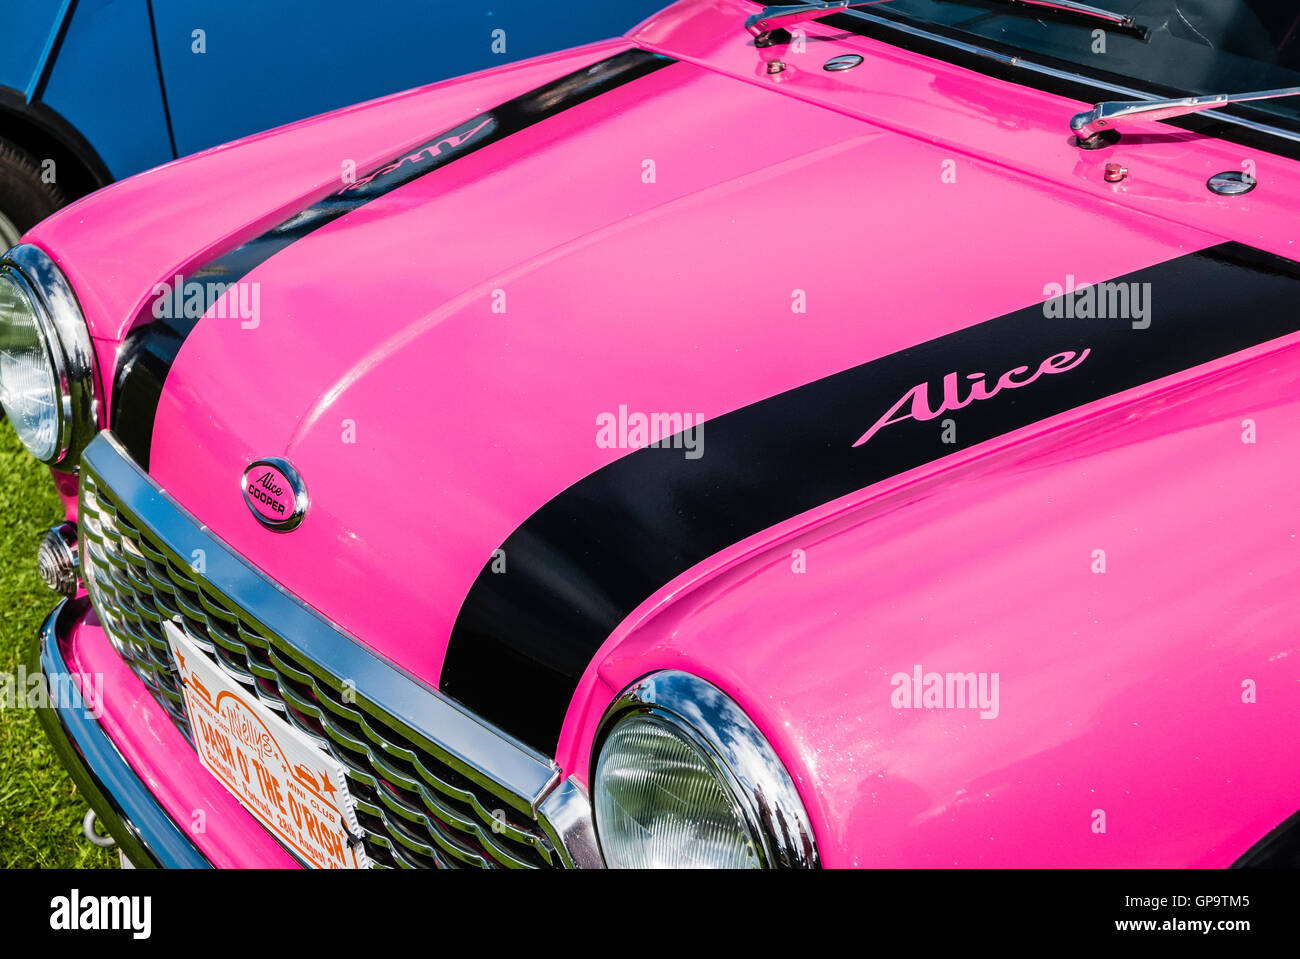 Rosa Austin Mini Cooper S, den Spitznamen Alice Cooper auf einem Mini  Autobesitzer Club Ausstellung mit passendem Zubehör im Kofferraum  Stockfotografie - Alamy